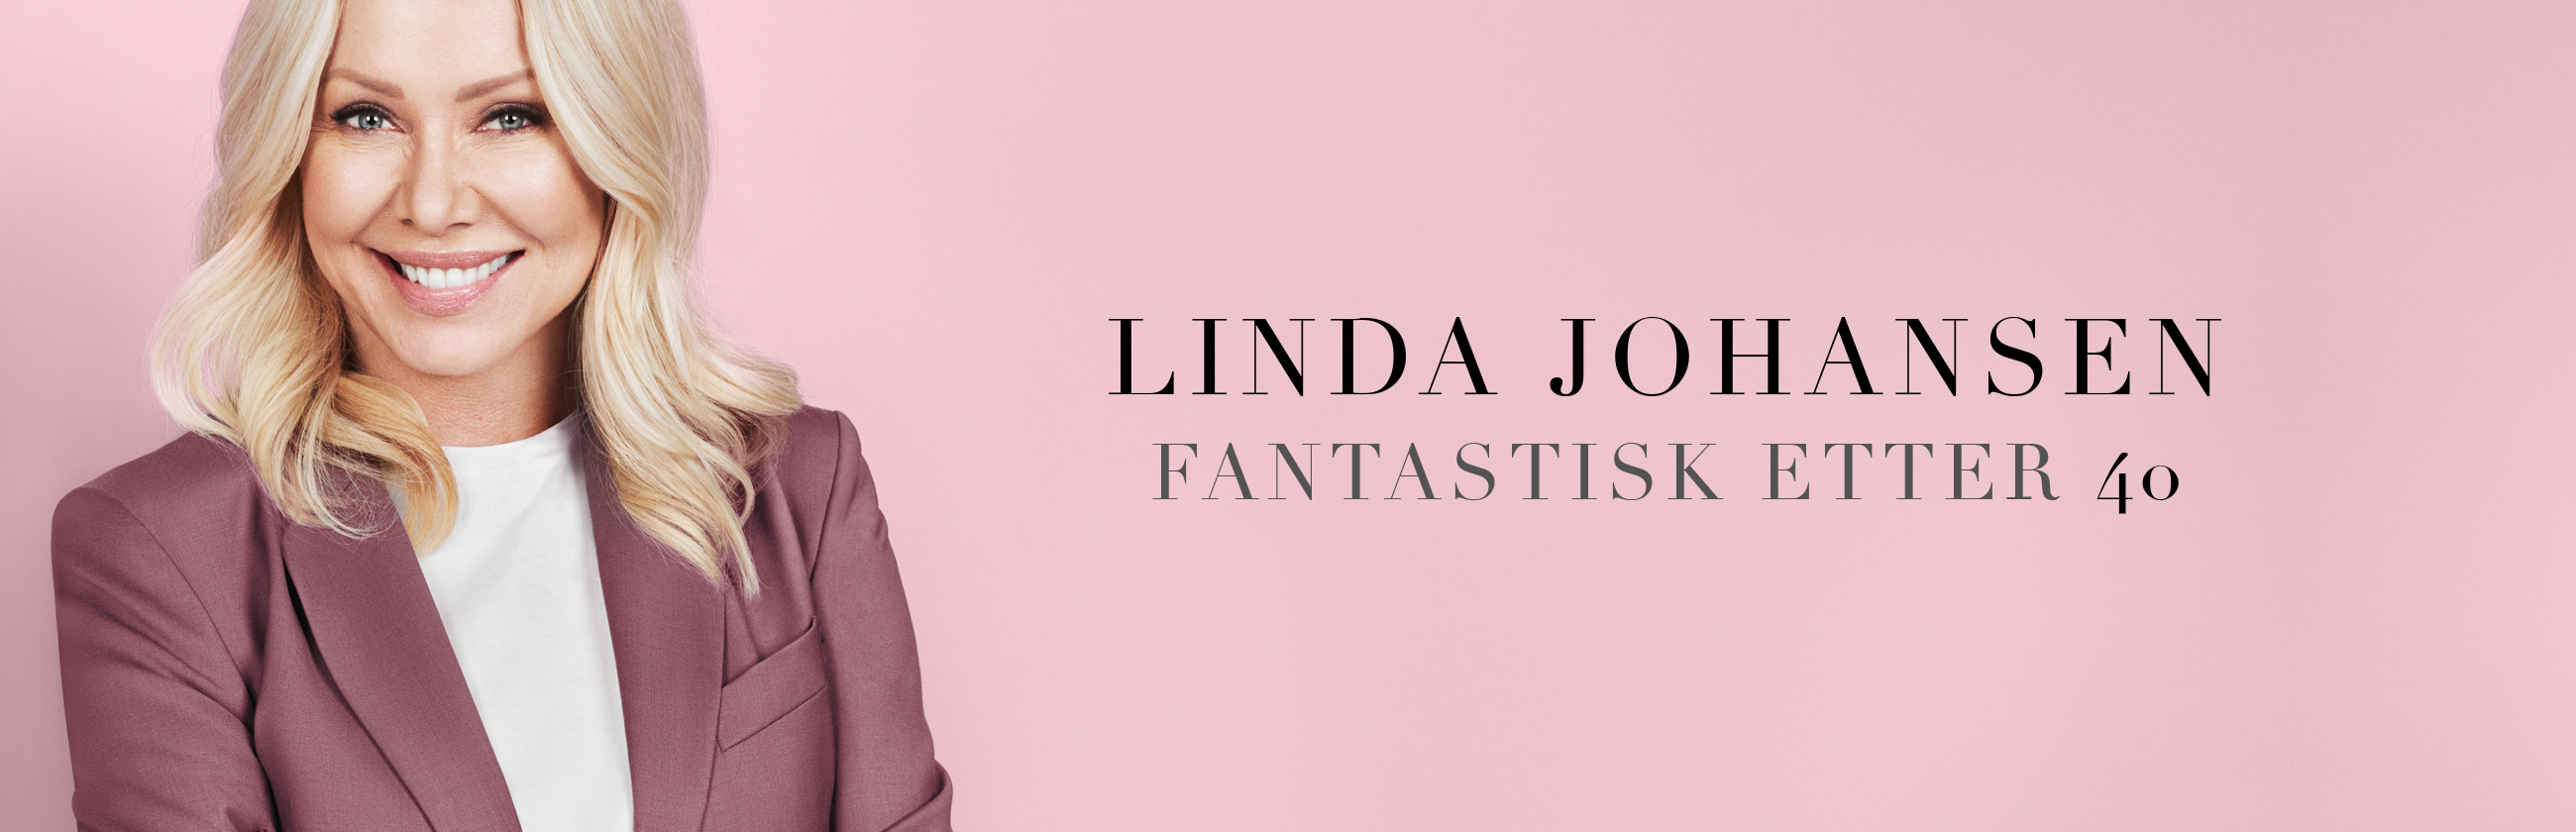 Linda Johansen, Fantastisk etter 40